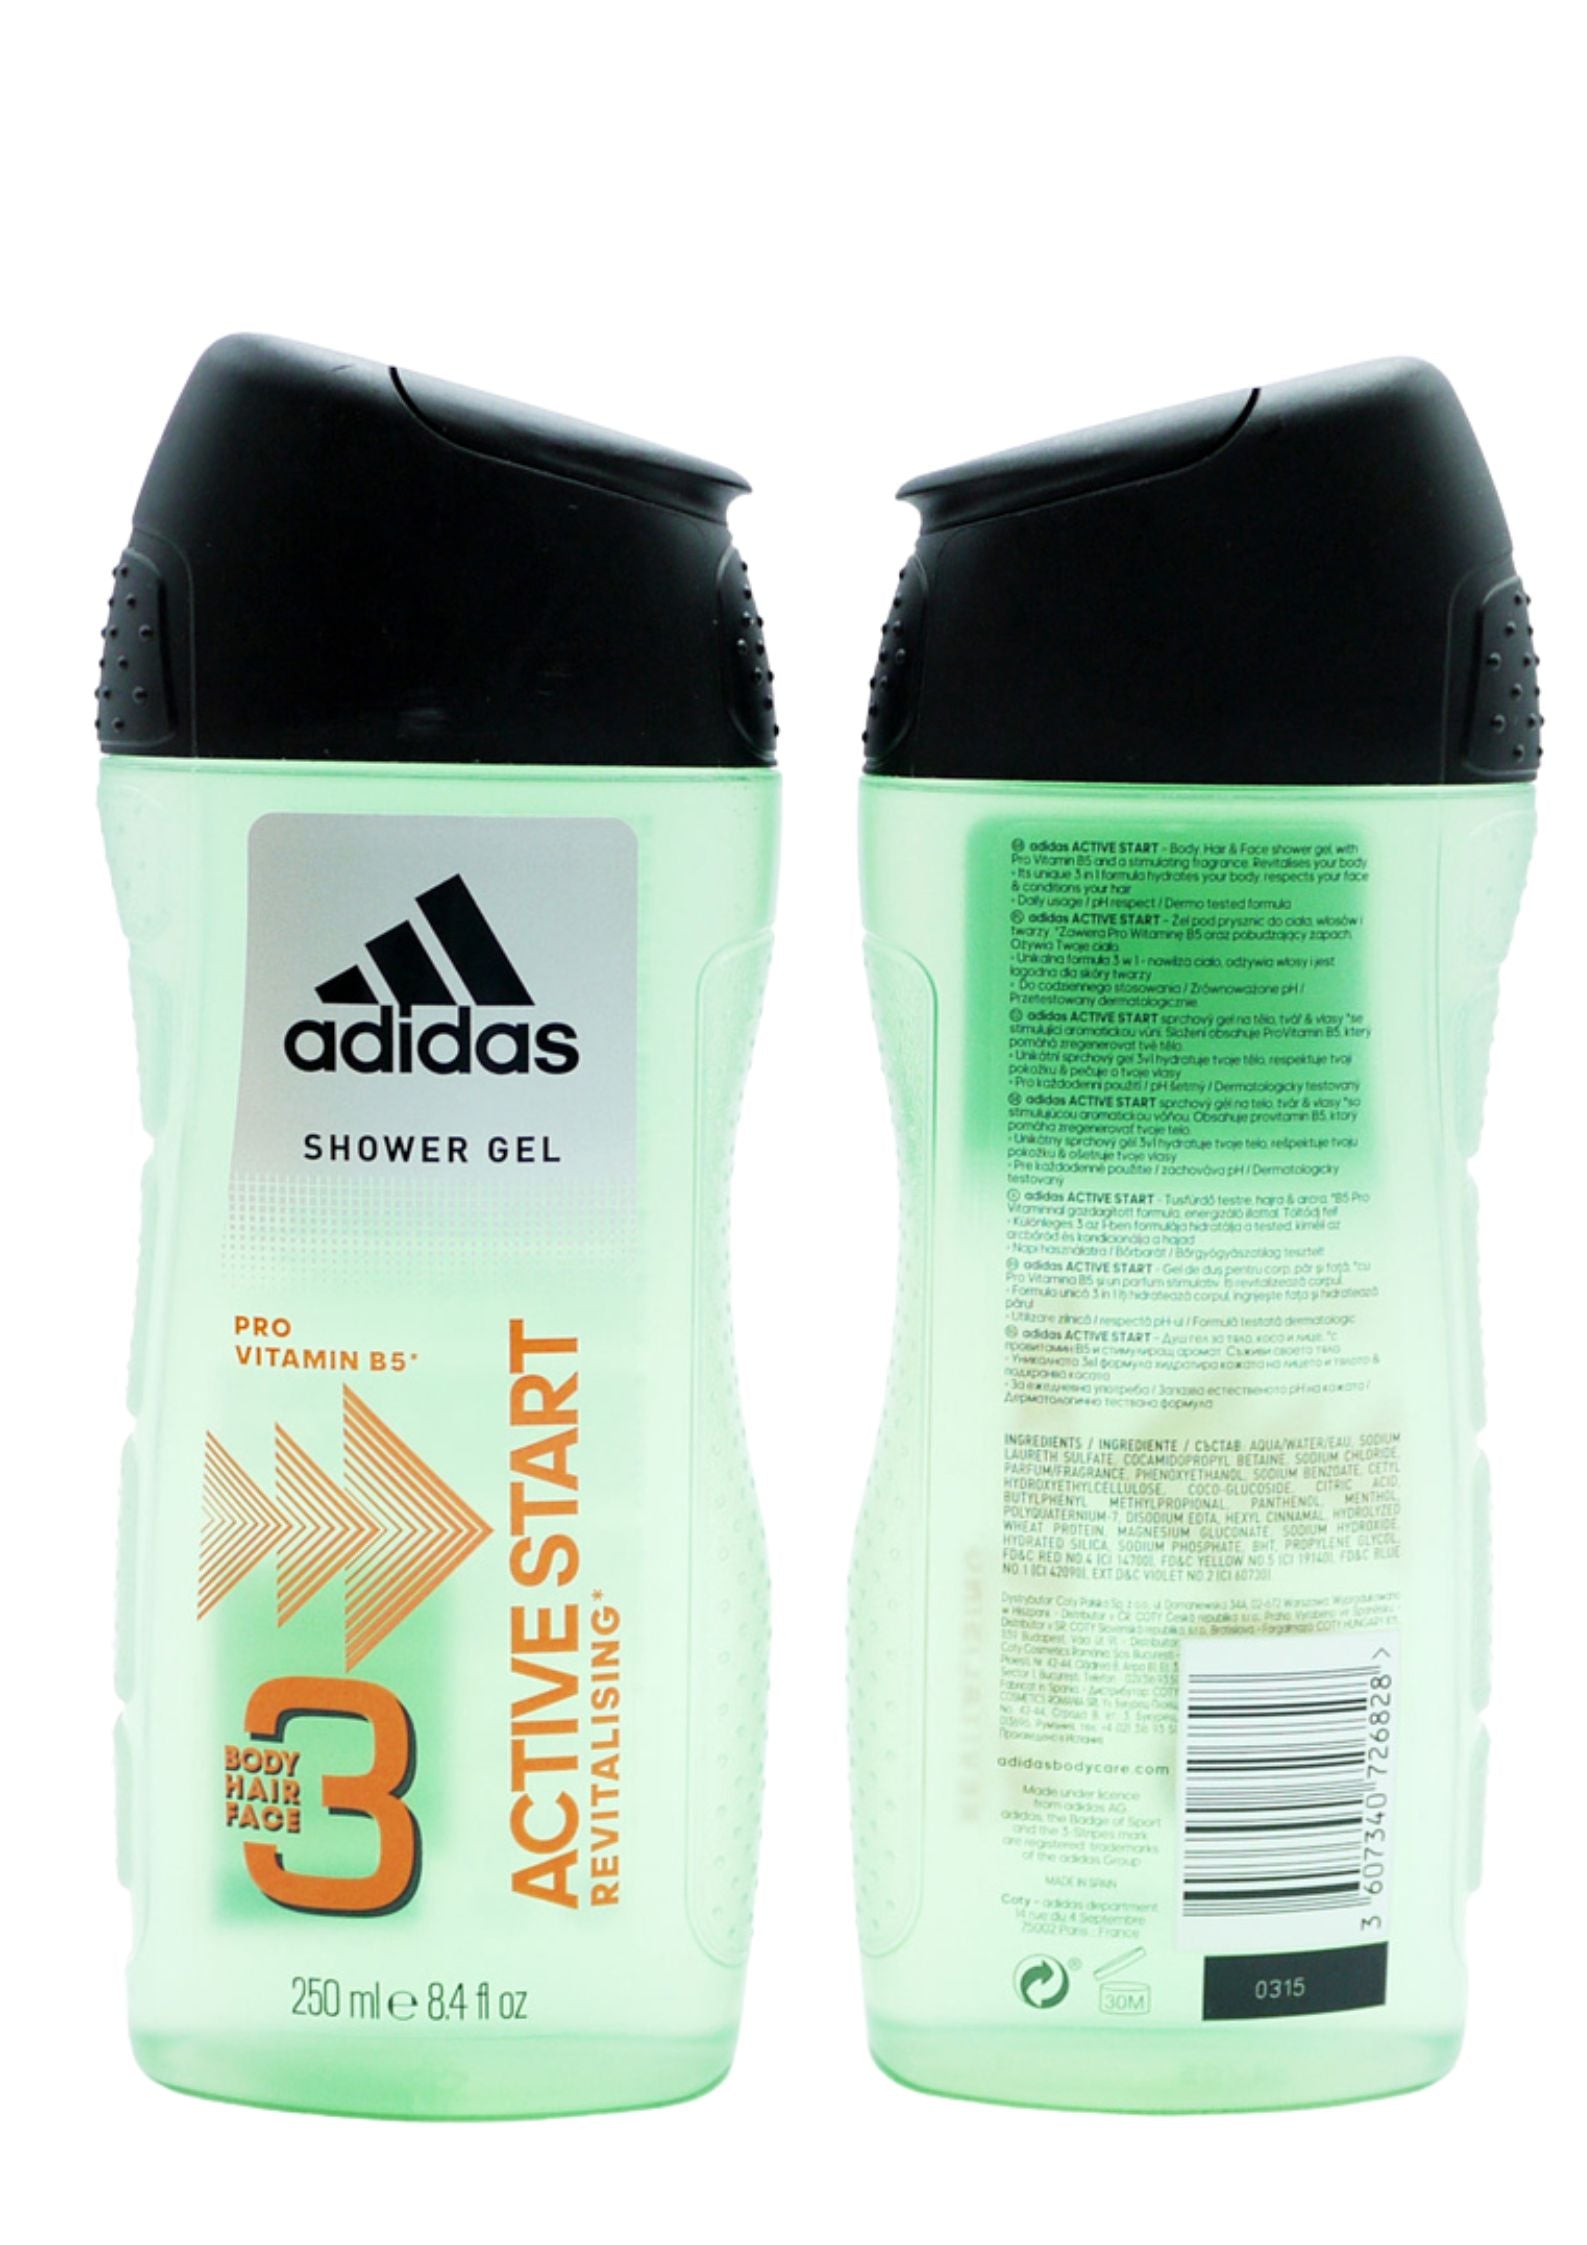 Adidas 3 Active Start Shower Gel for Men 250ml